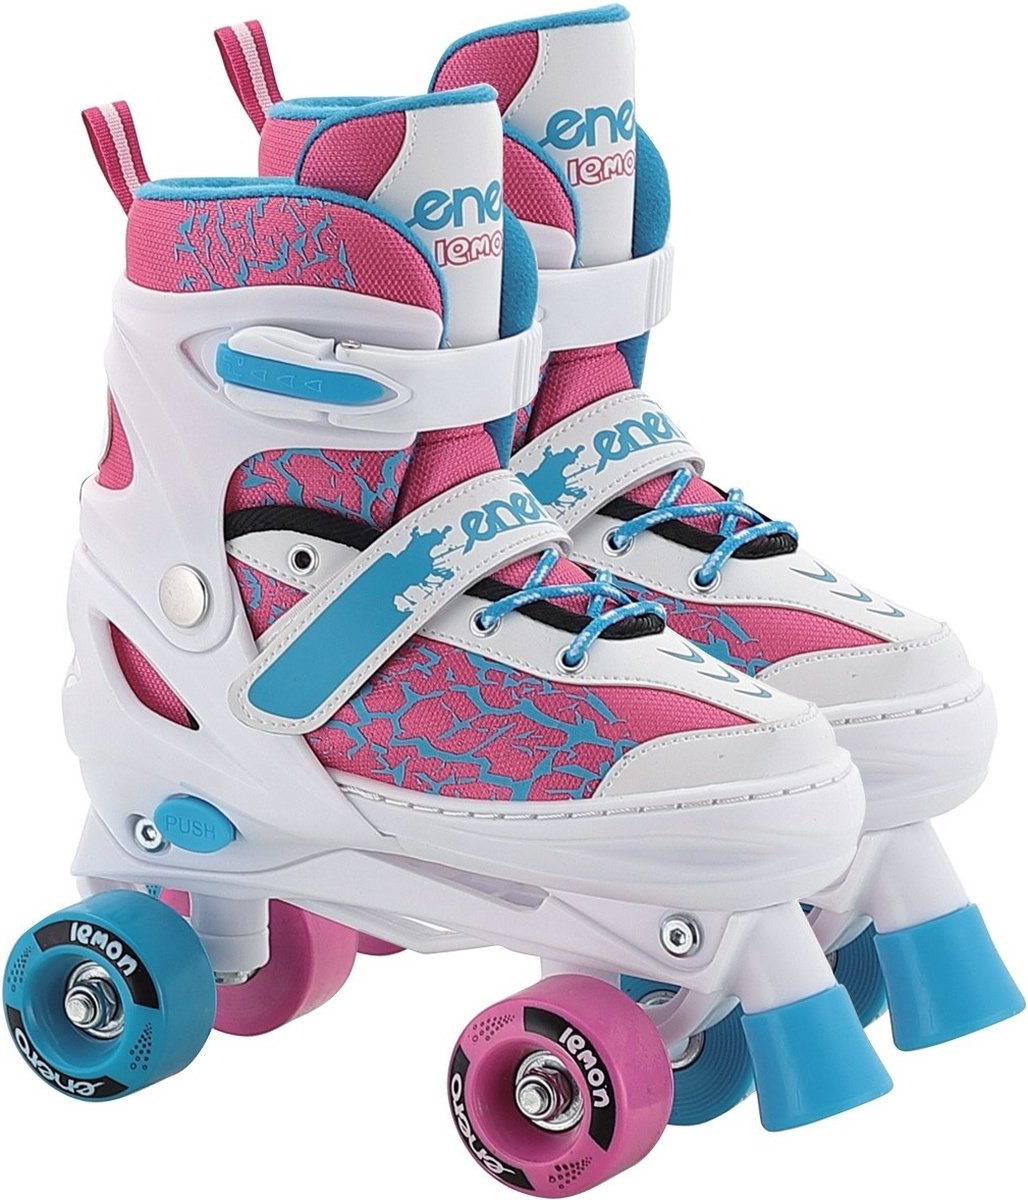 Inline skate, rolschaats en schaats - 3-in-1 - maat 34-37 - wit, roze blauw